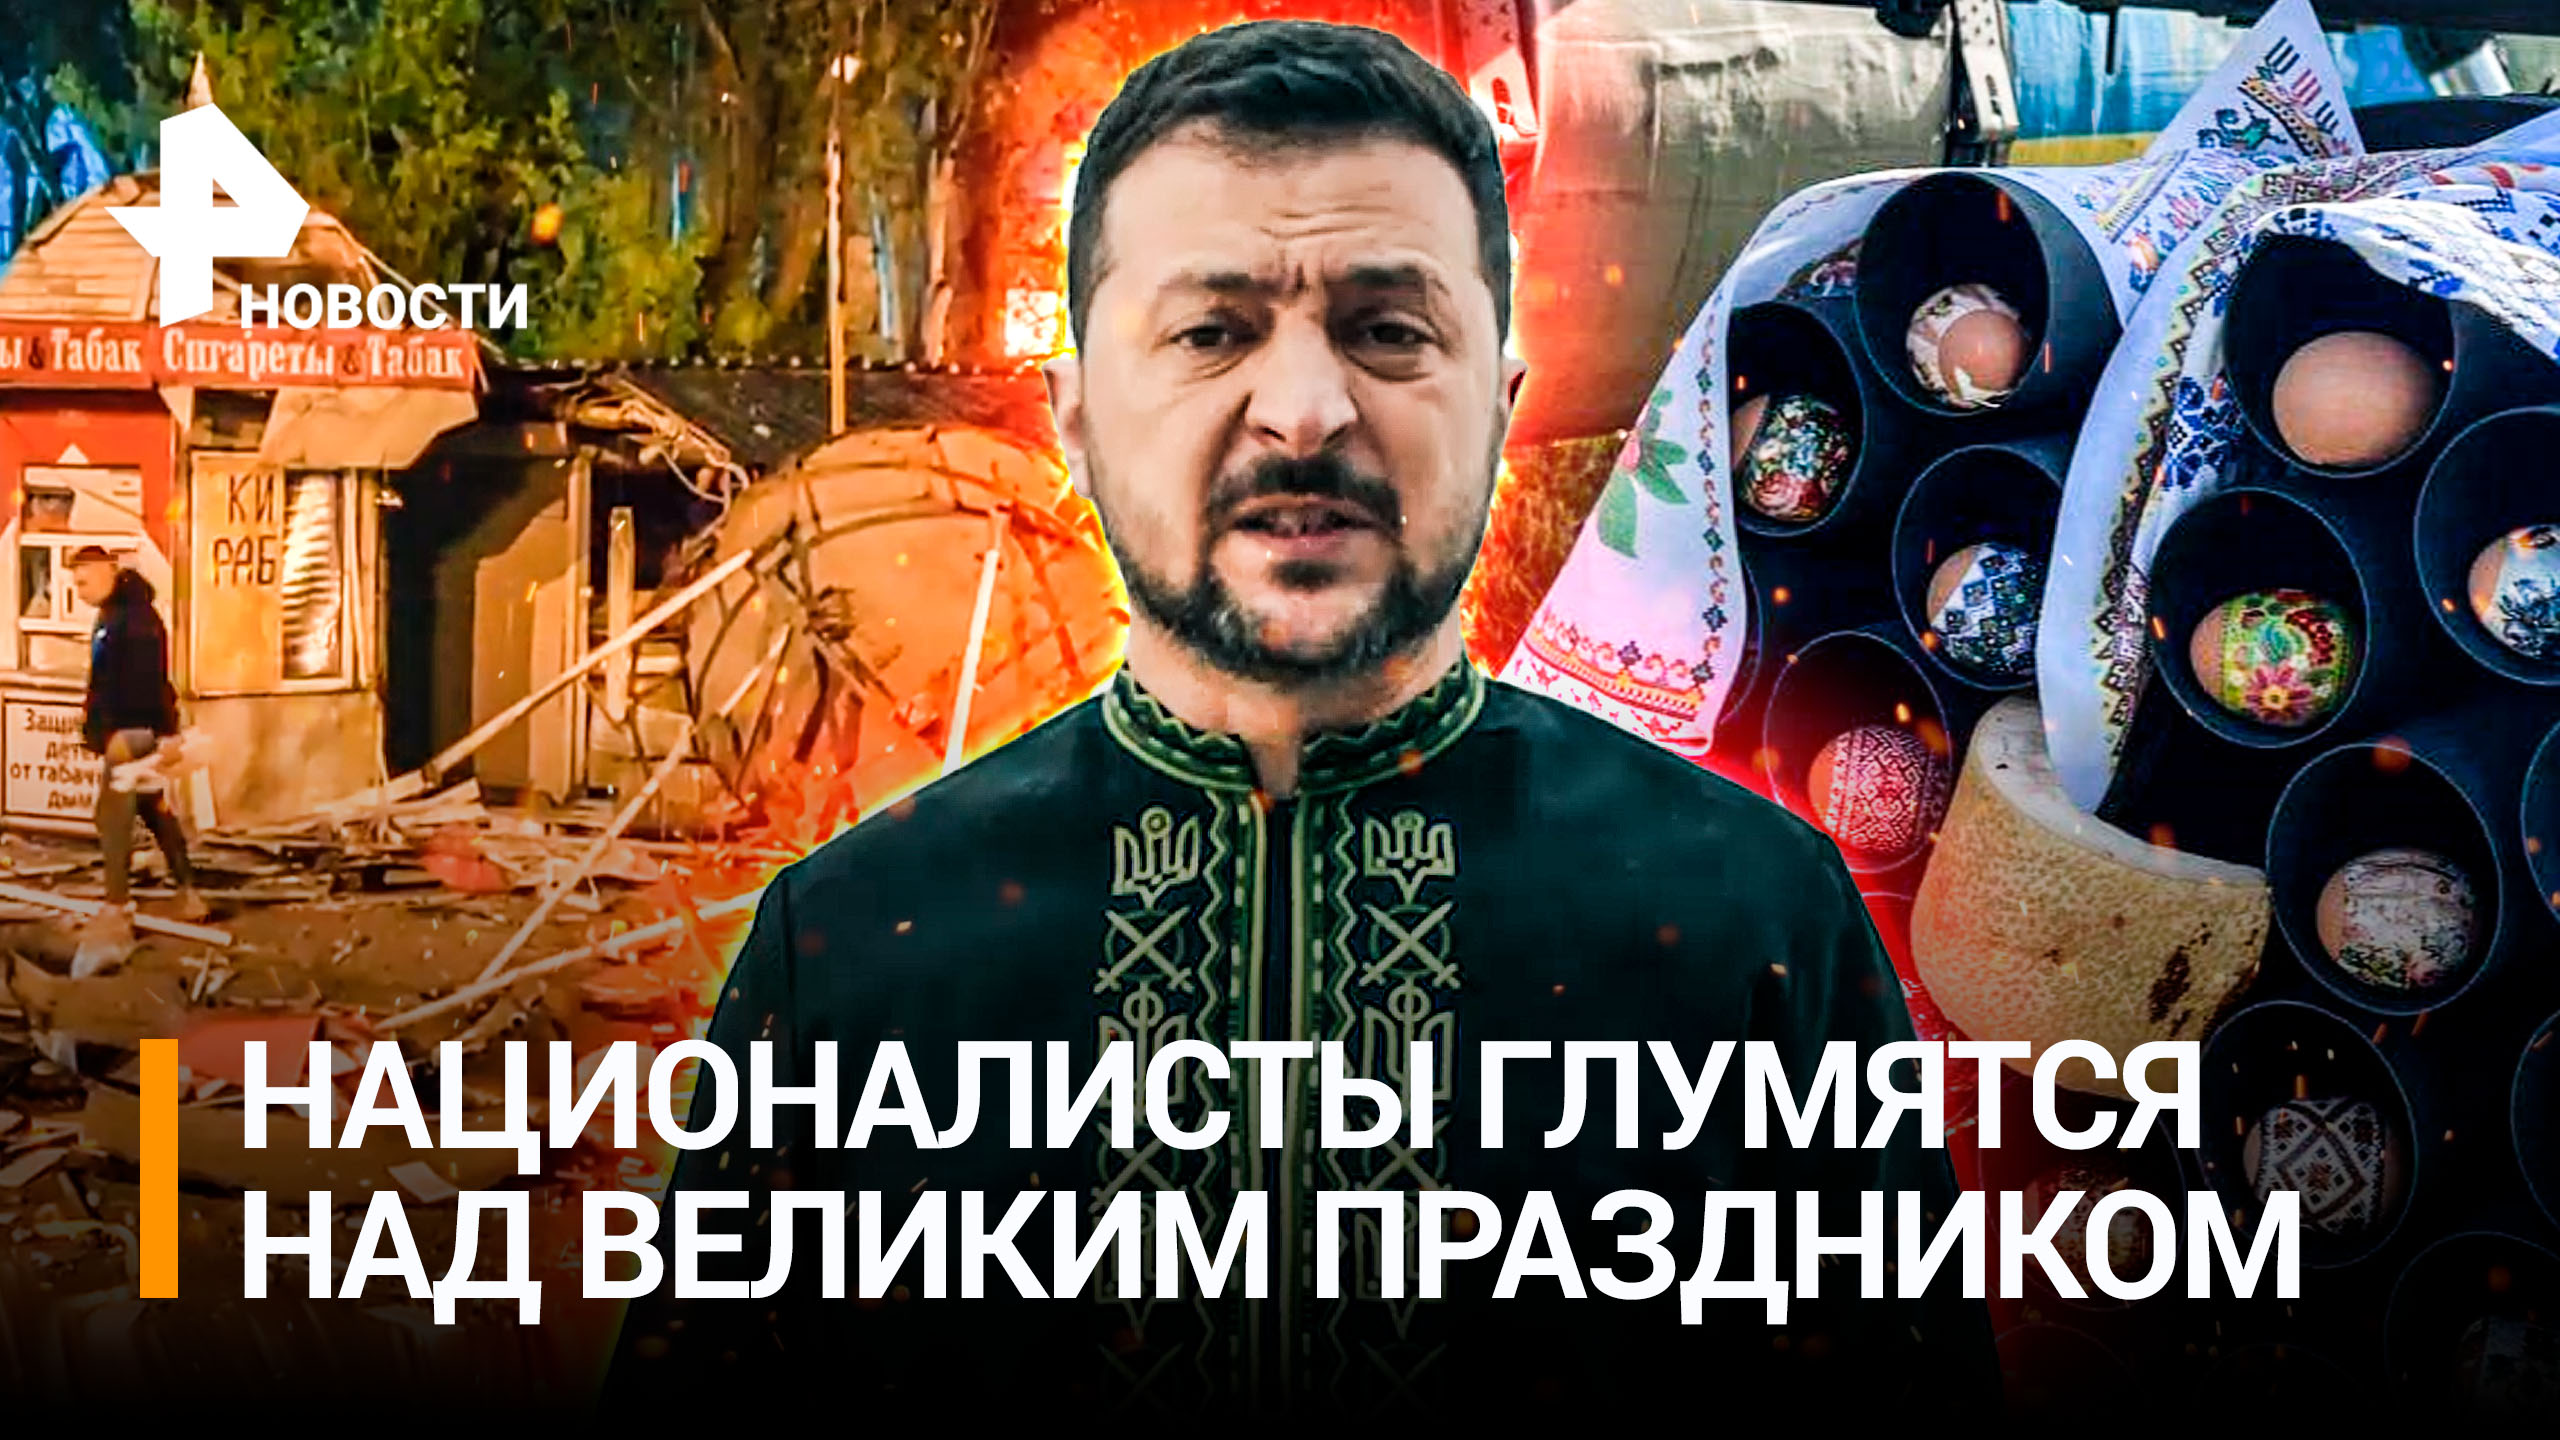 ВСУ испоганили Пасху: выпустили ракеты по храму в Донецке и осквернили символы праздника / РЕН